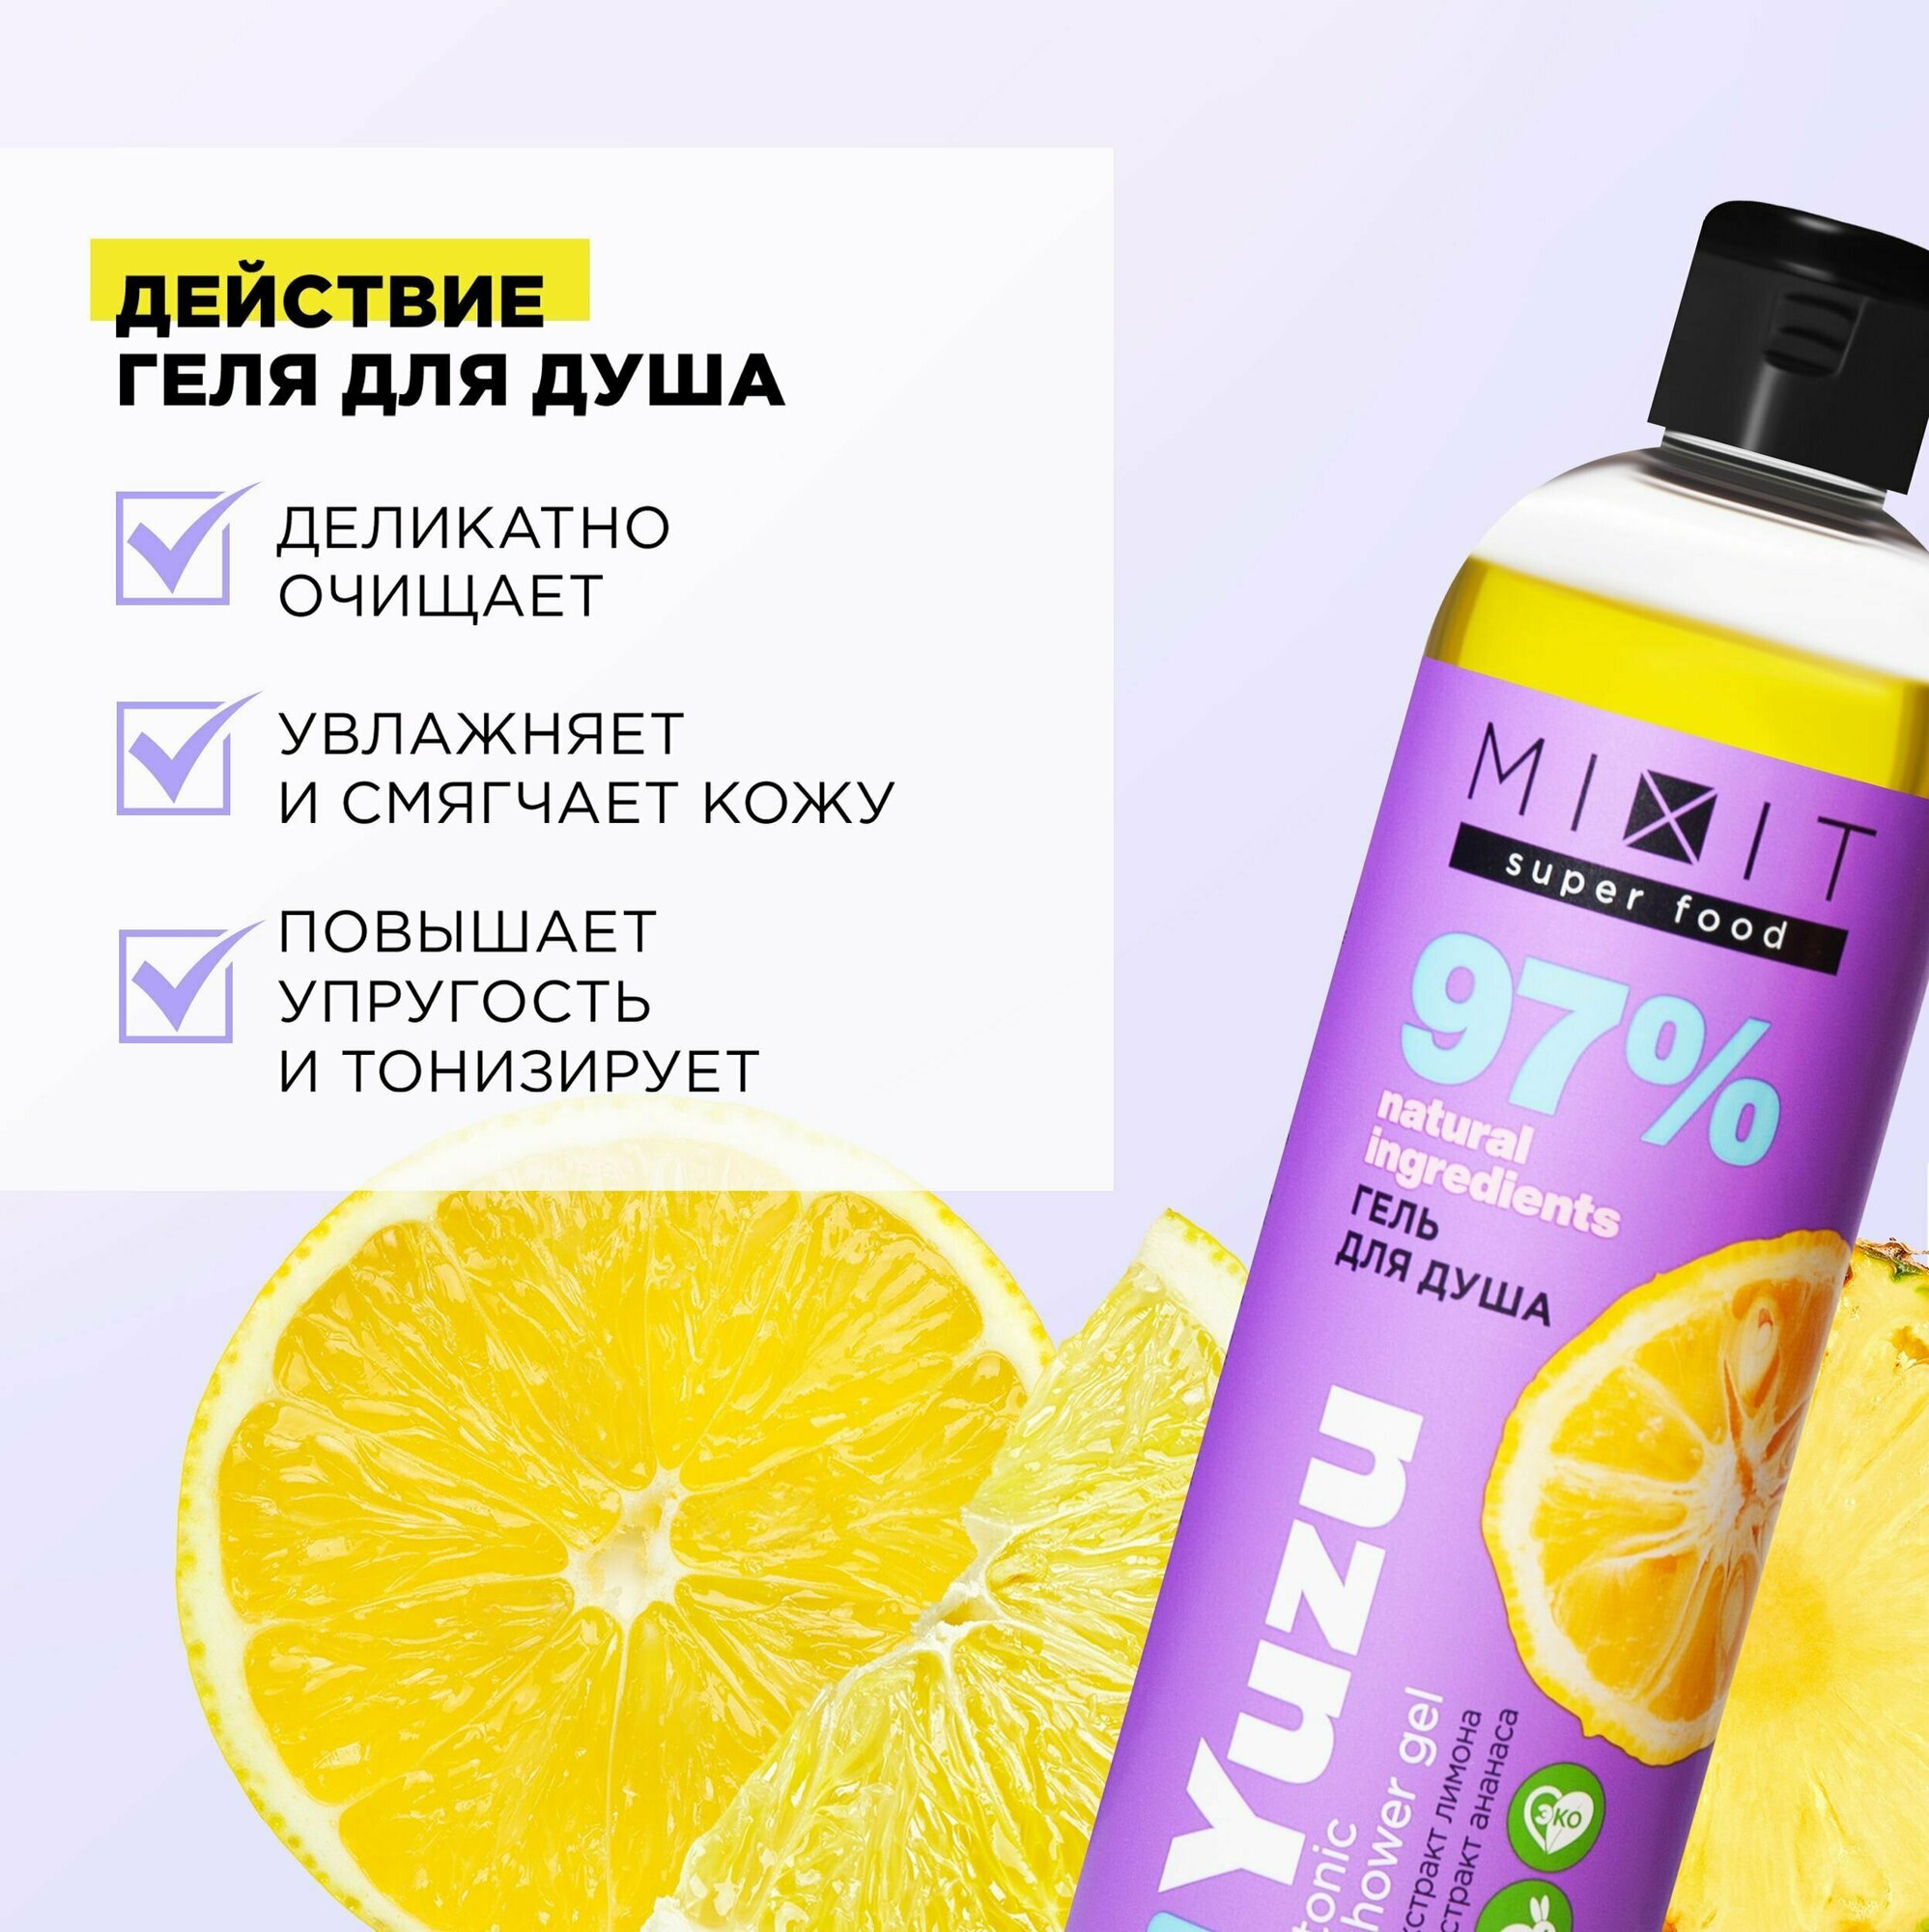 MIXIT Тонизирующий гель для душа с экстрактом ананаса и лимона для омоложения и очищения кожи, ежедневного детокс ухода за телом SUPER FOOD, 400 мл